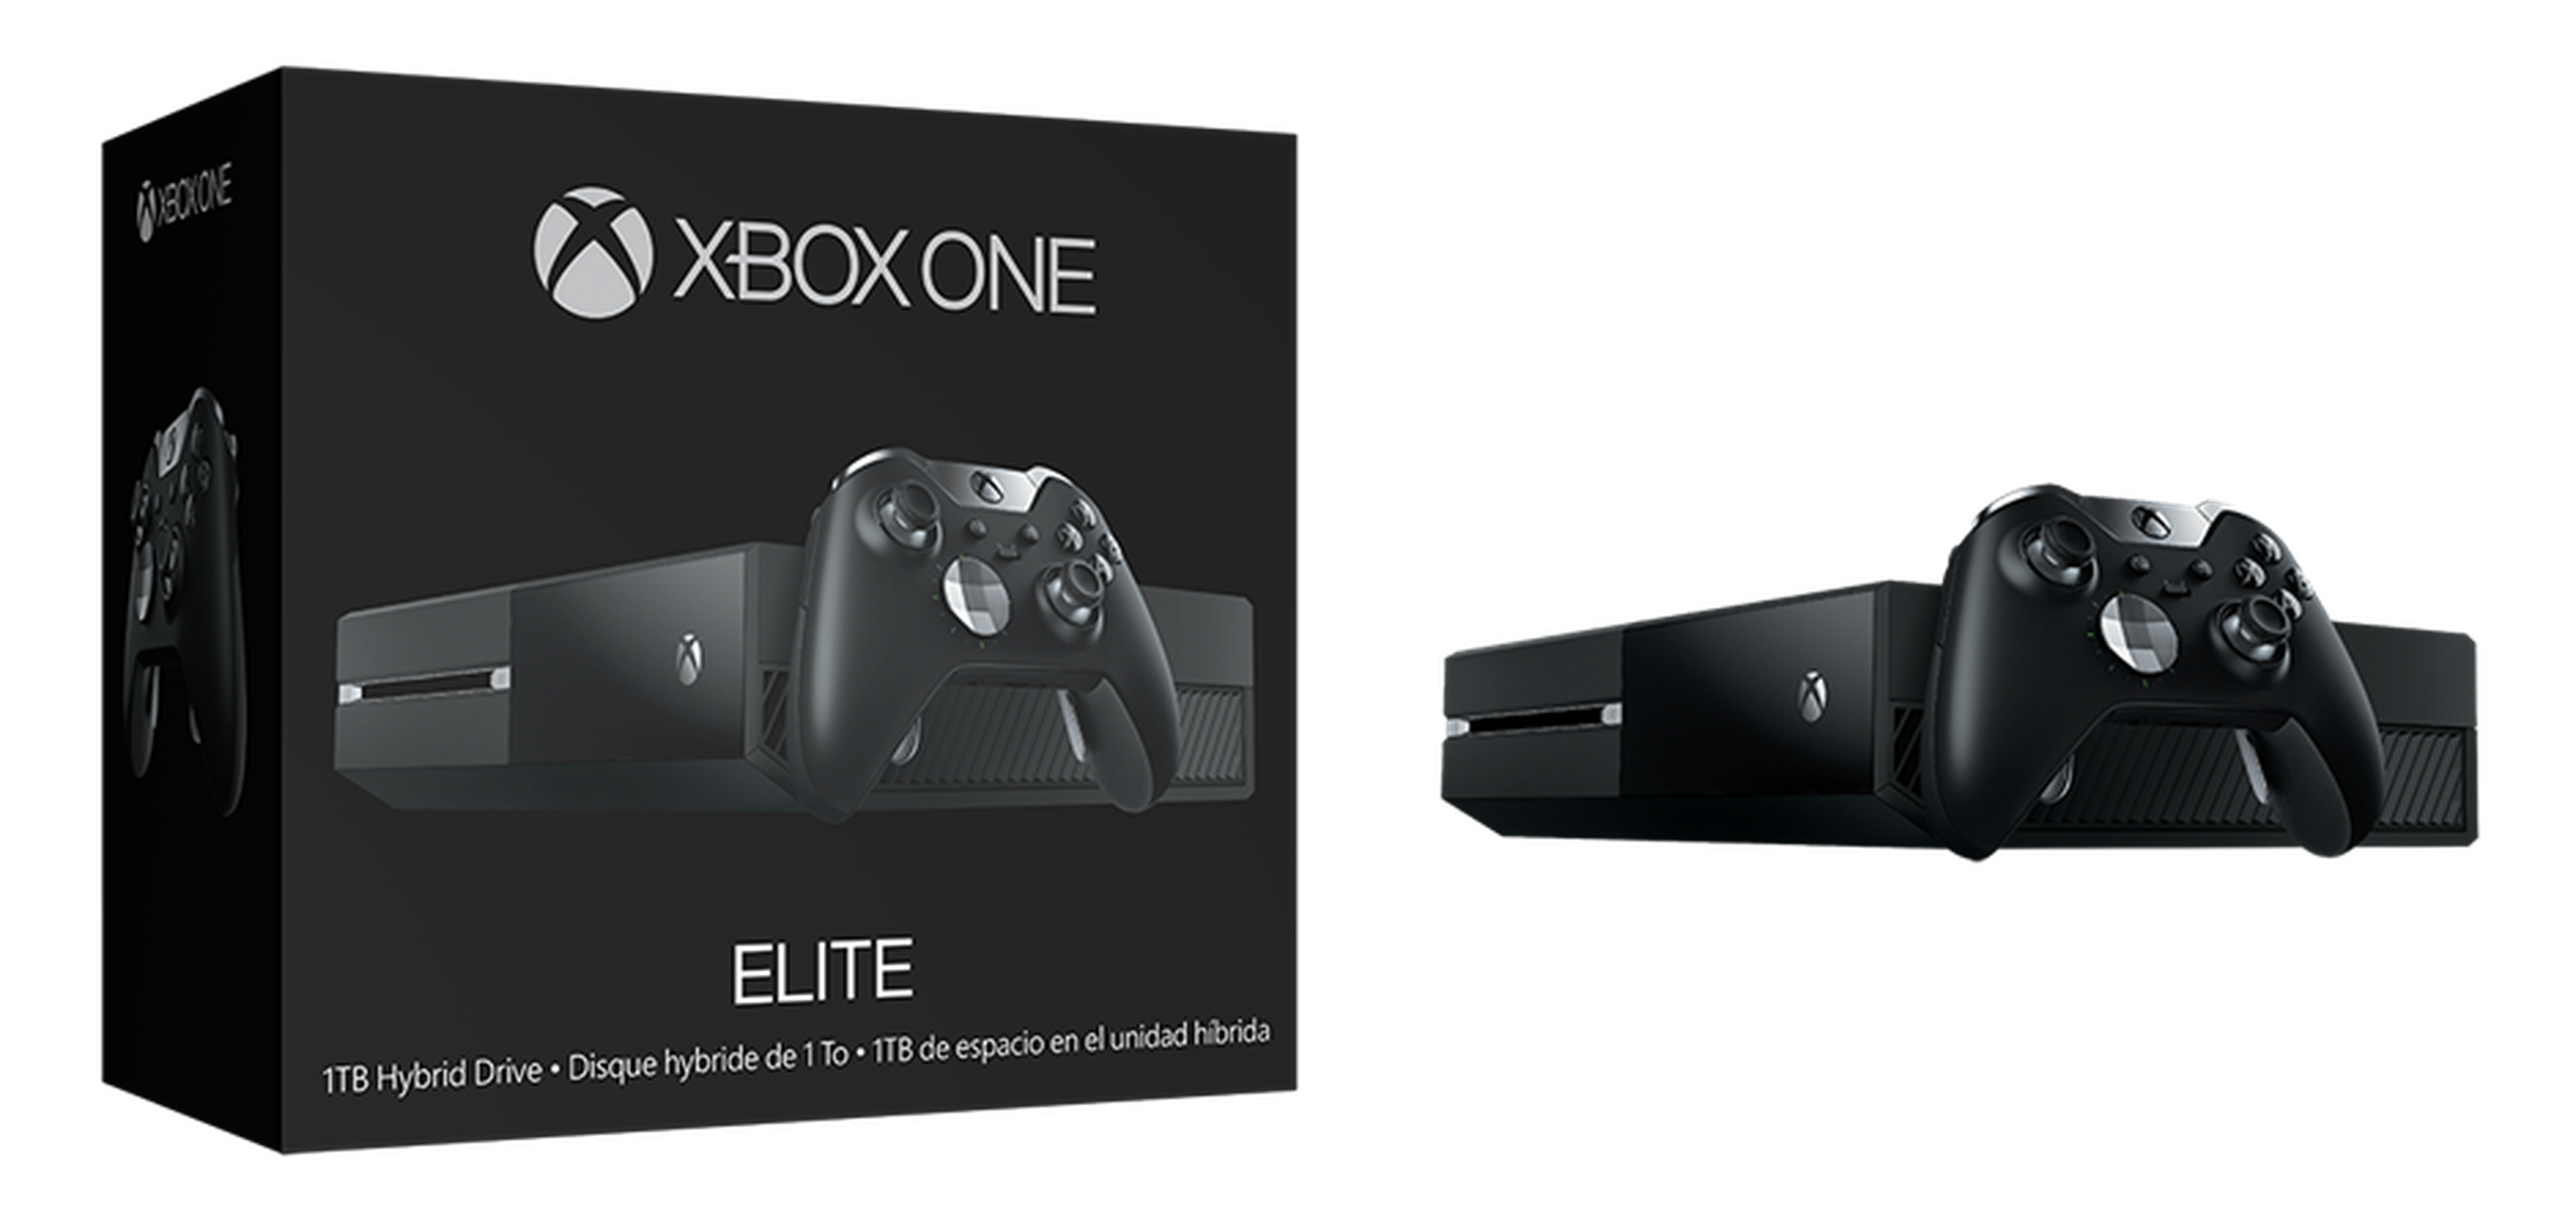 Anunciada Xbox One Elite, un nuevo modelo de la consola con disco híbrido de 1 TB